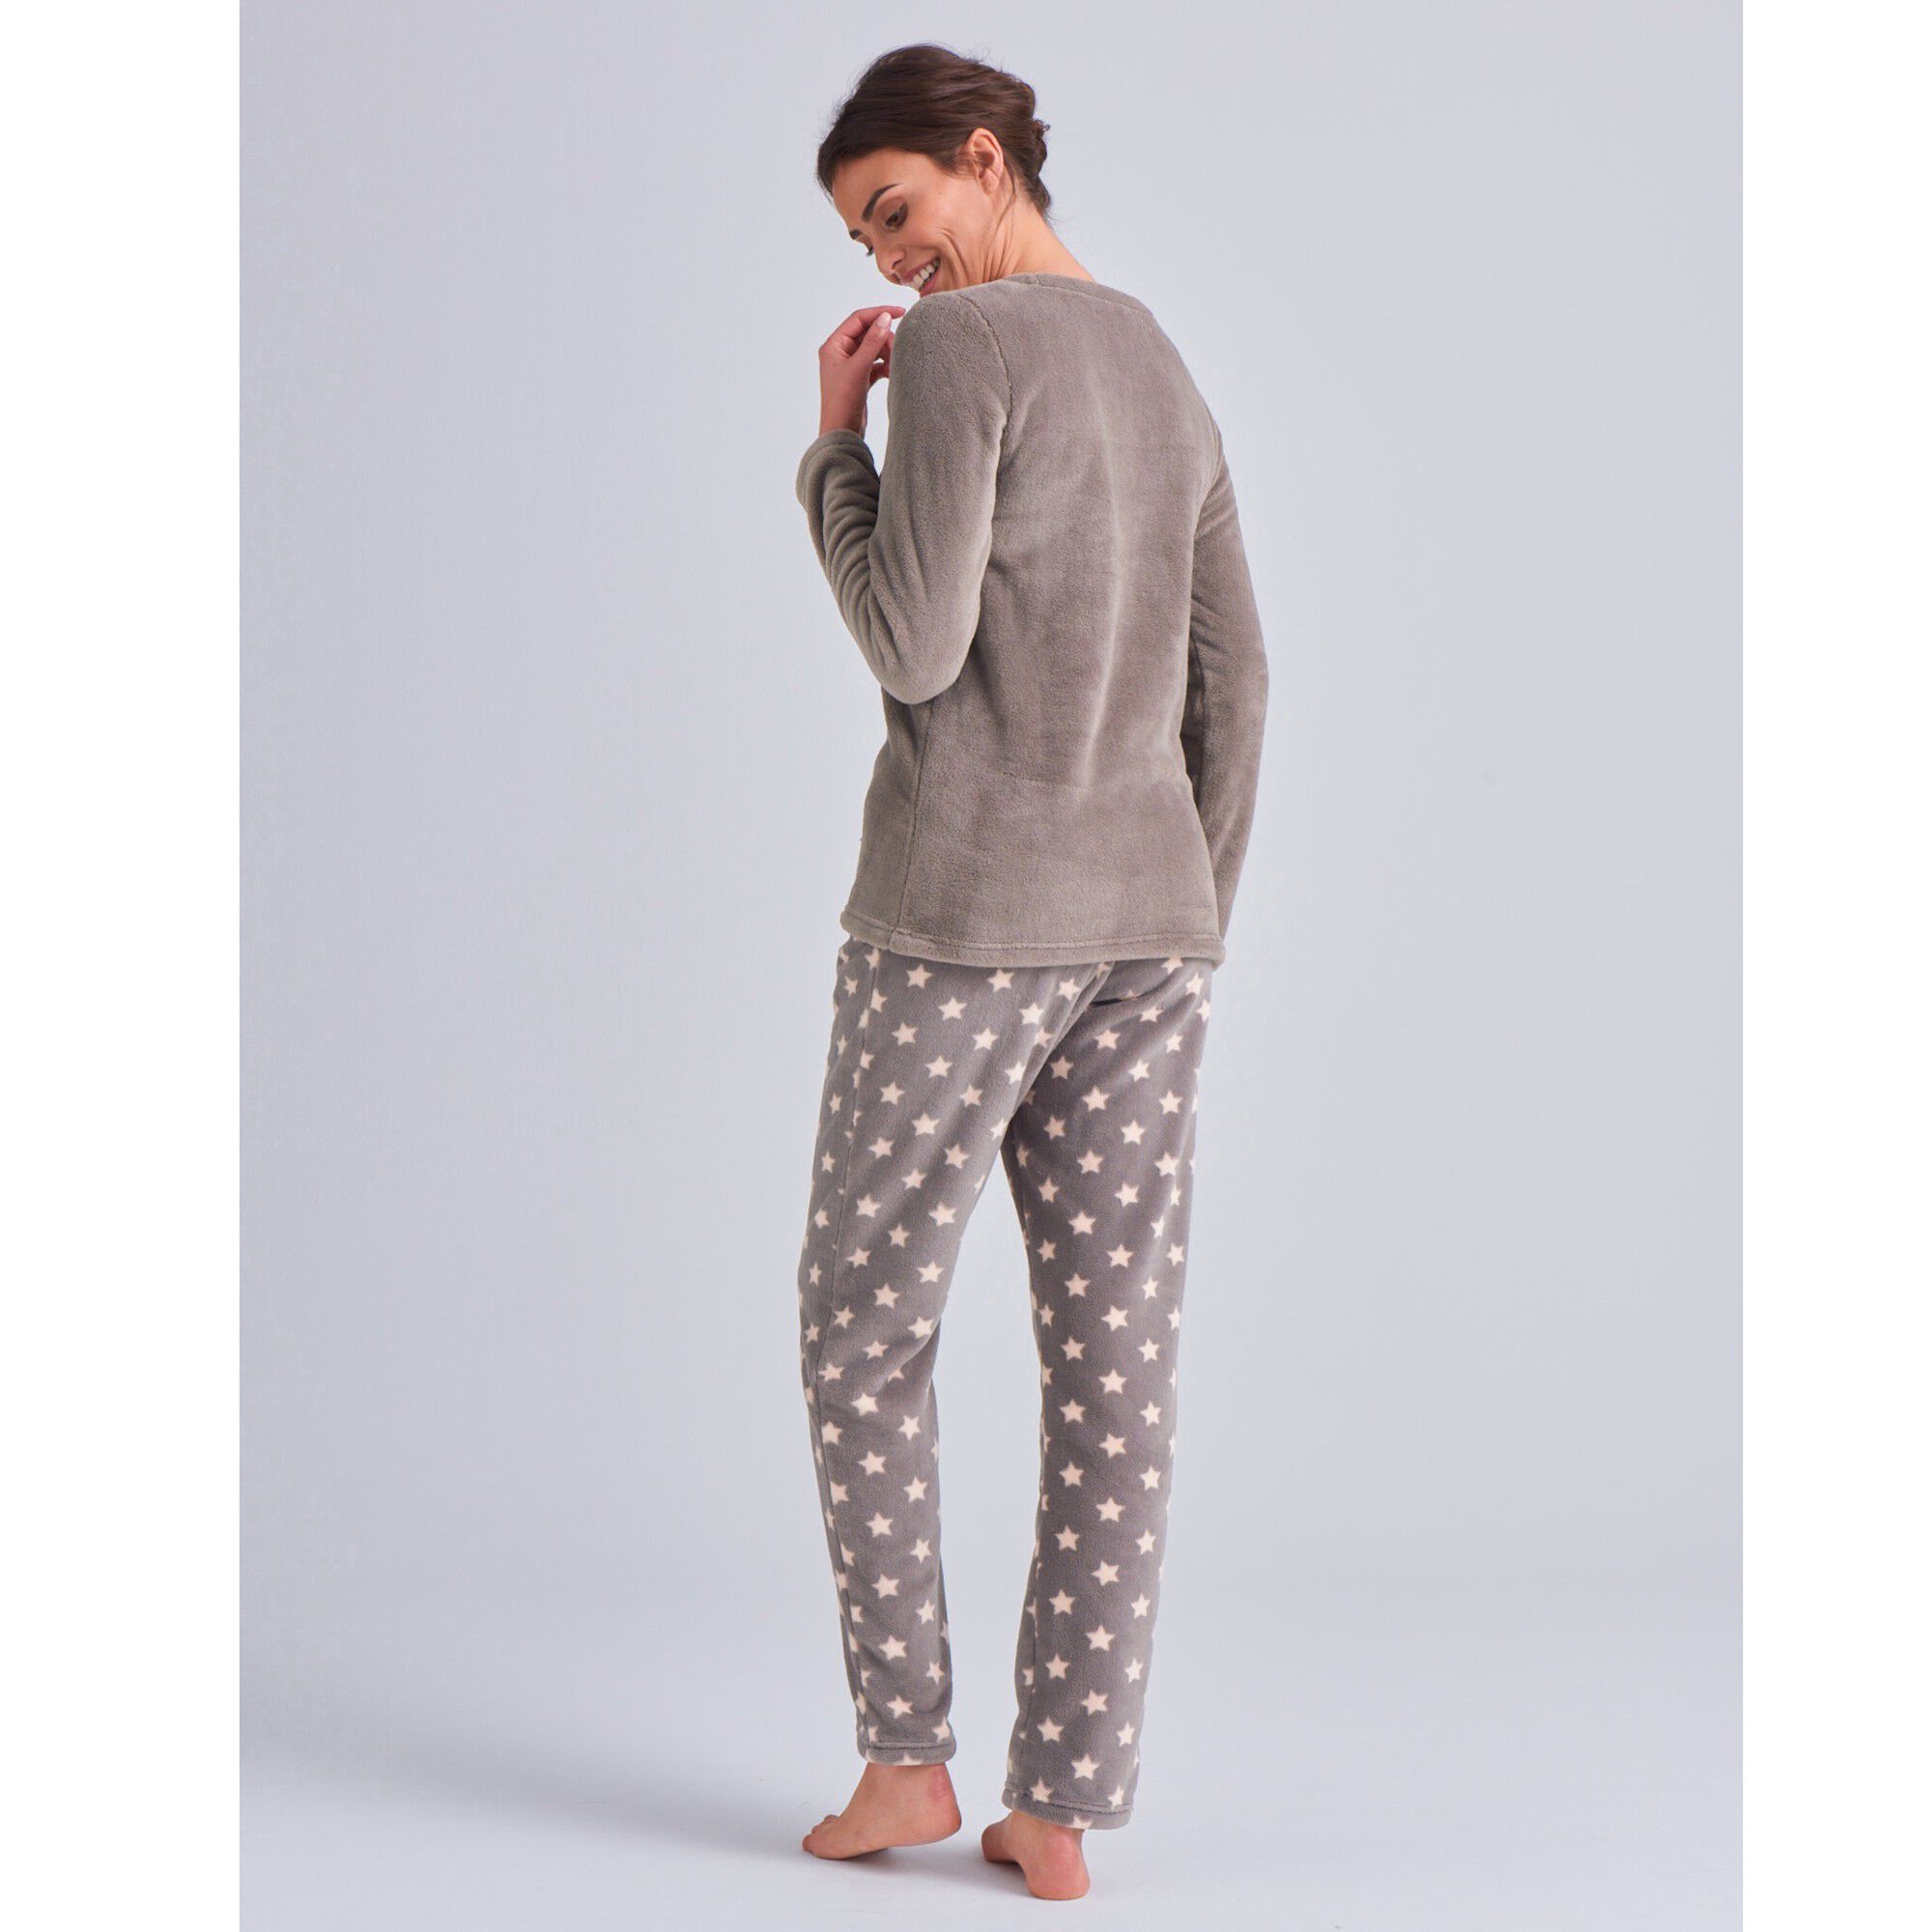 Pyjama Polaire Imprimé Pois Toucher Peluche Manches Longues Blacheporte Femme Vêtements Sous-vêtements vêtements de nuit Pyjamas 